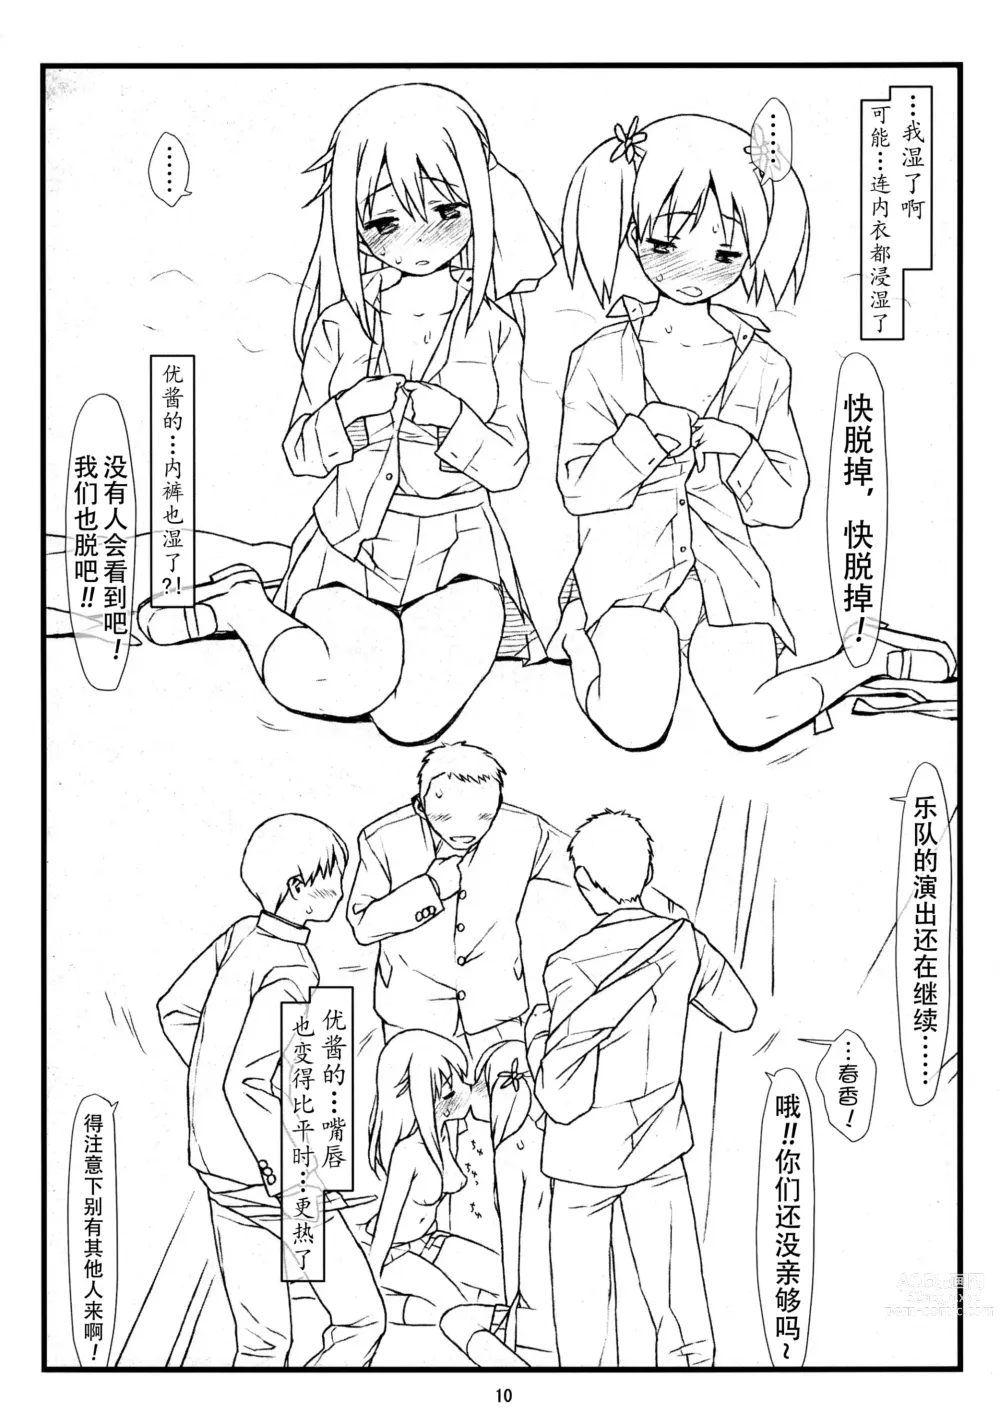 Page 8 of doujinshi Yuri Kan